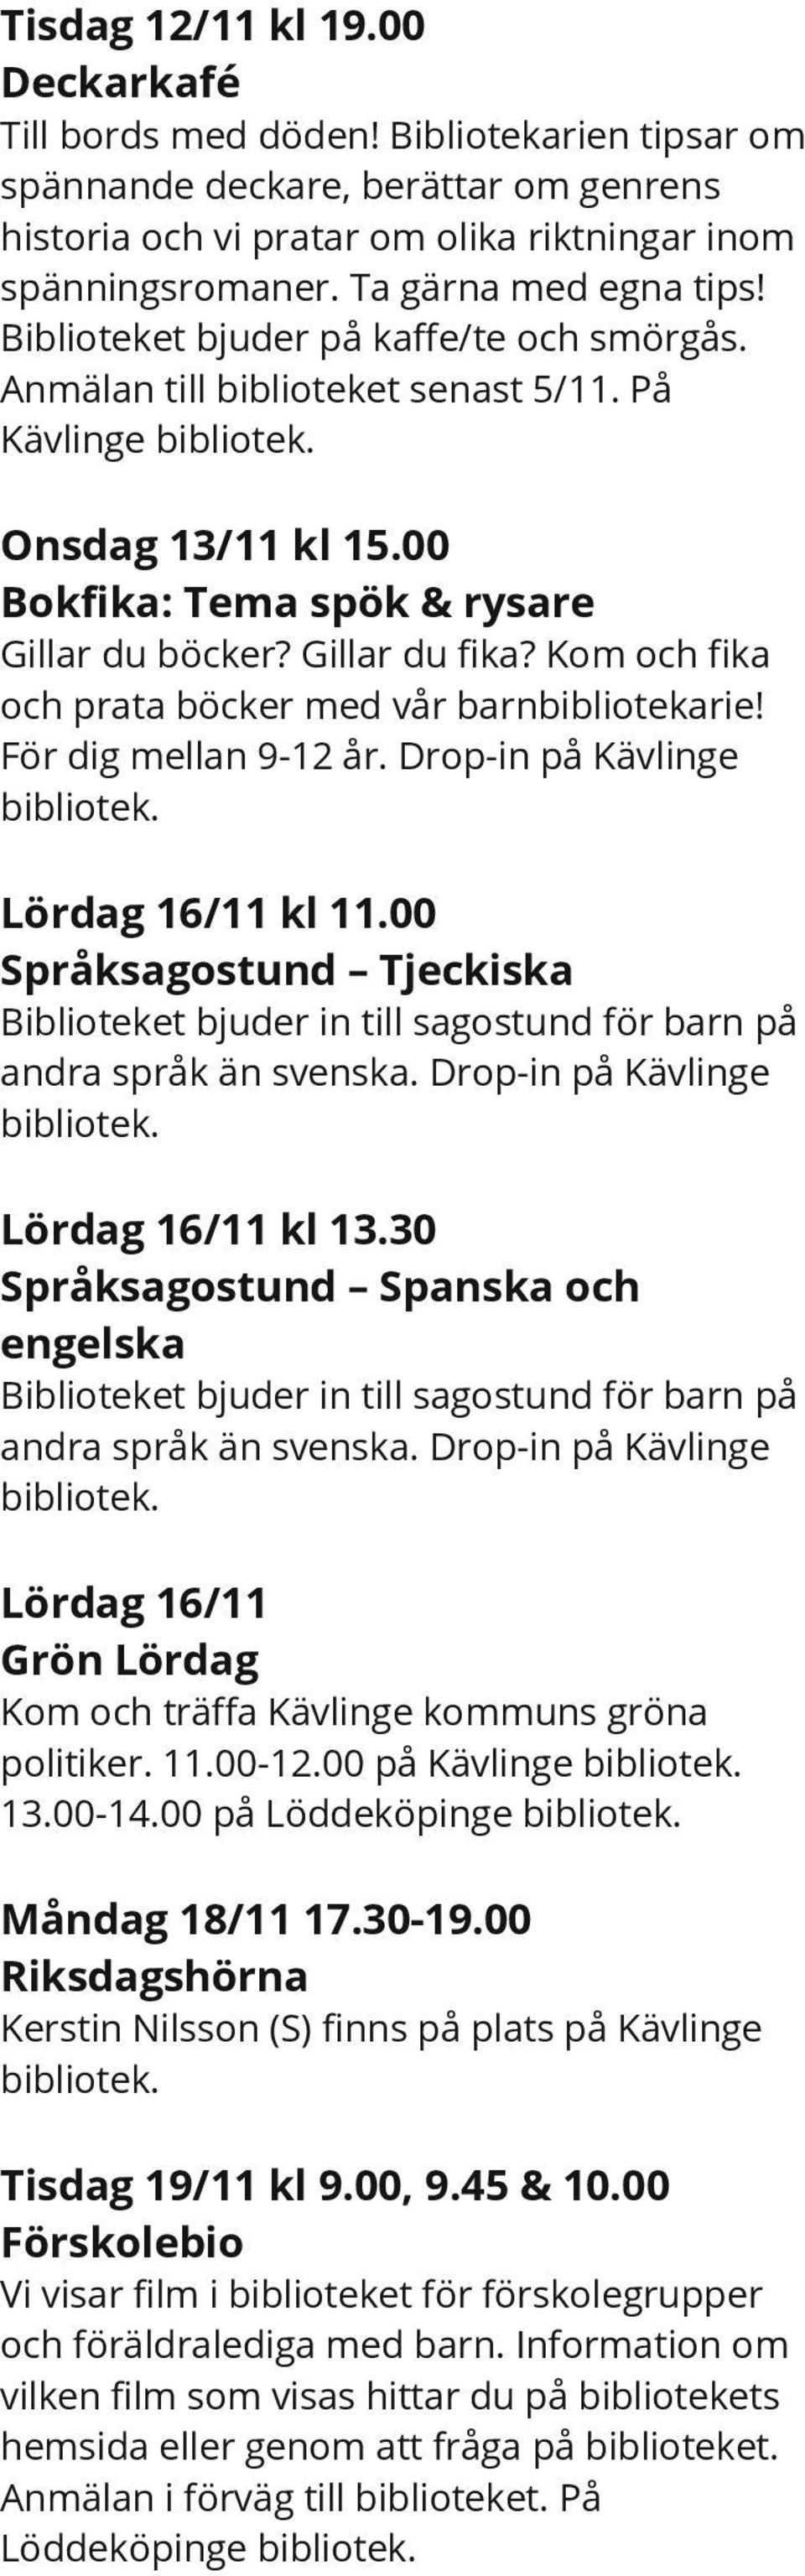 Gillar du fika? Kom och fika och prata böcker med vår barnbibliotekarie! För dig mellan 9-12 år. Drop-in på Kävlinge Lördag 16/11 kl 11.00 Språksagostund Tjeckiska andra språk än svenska.